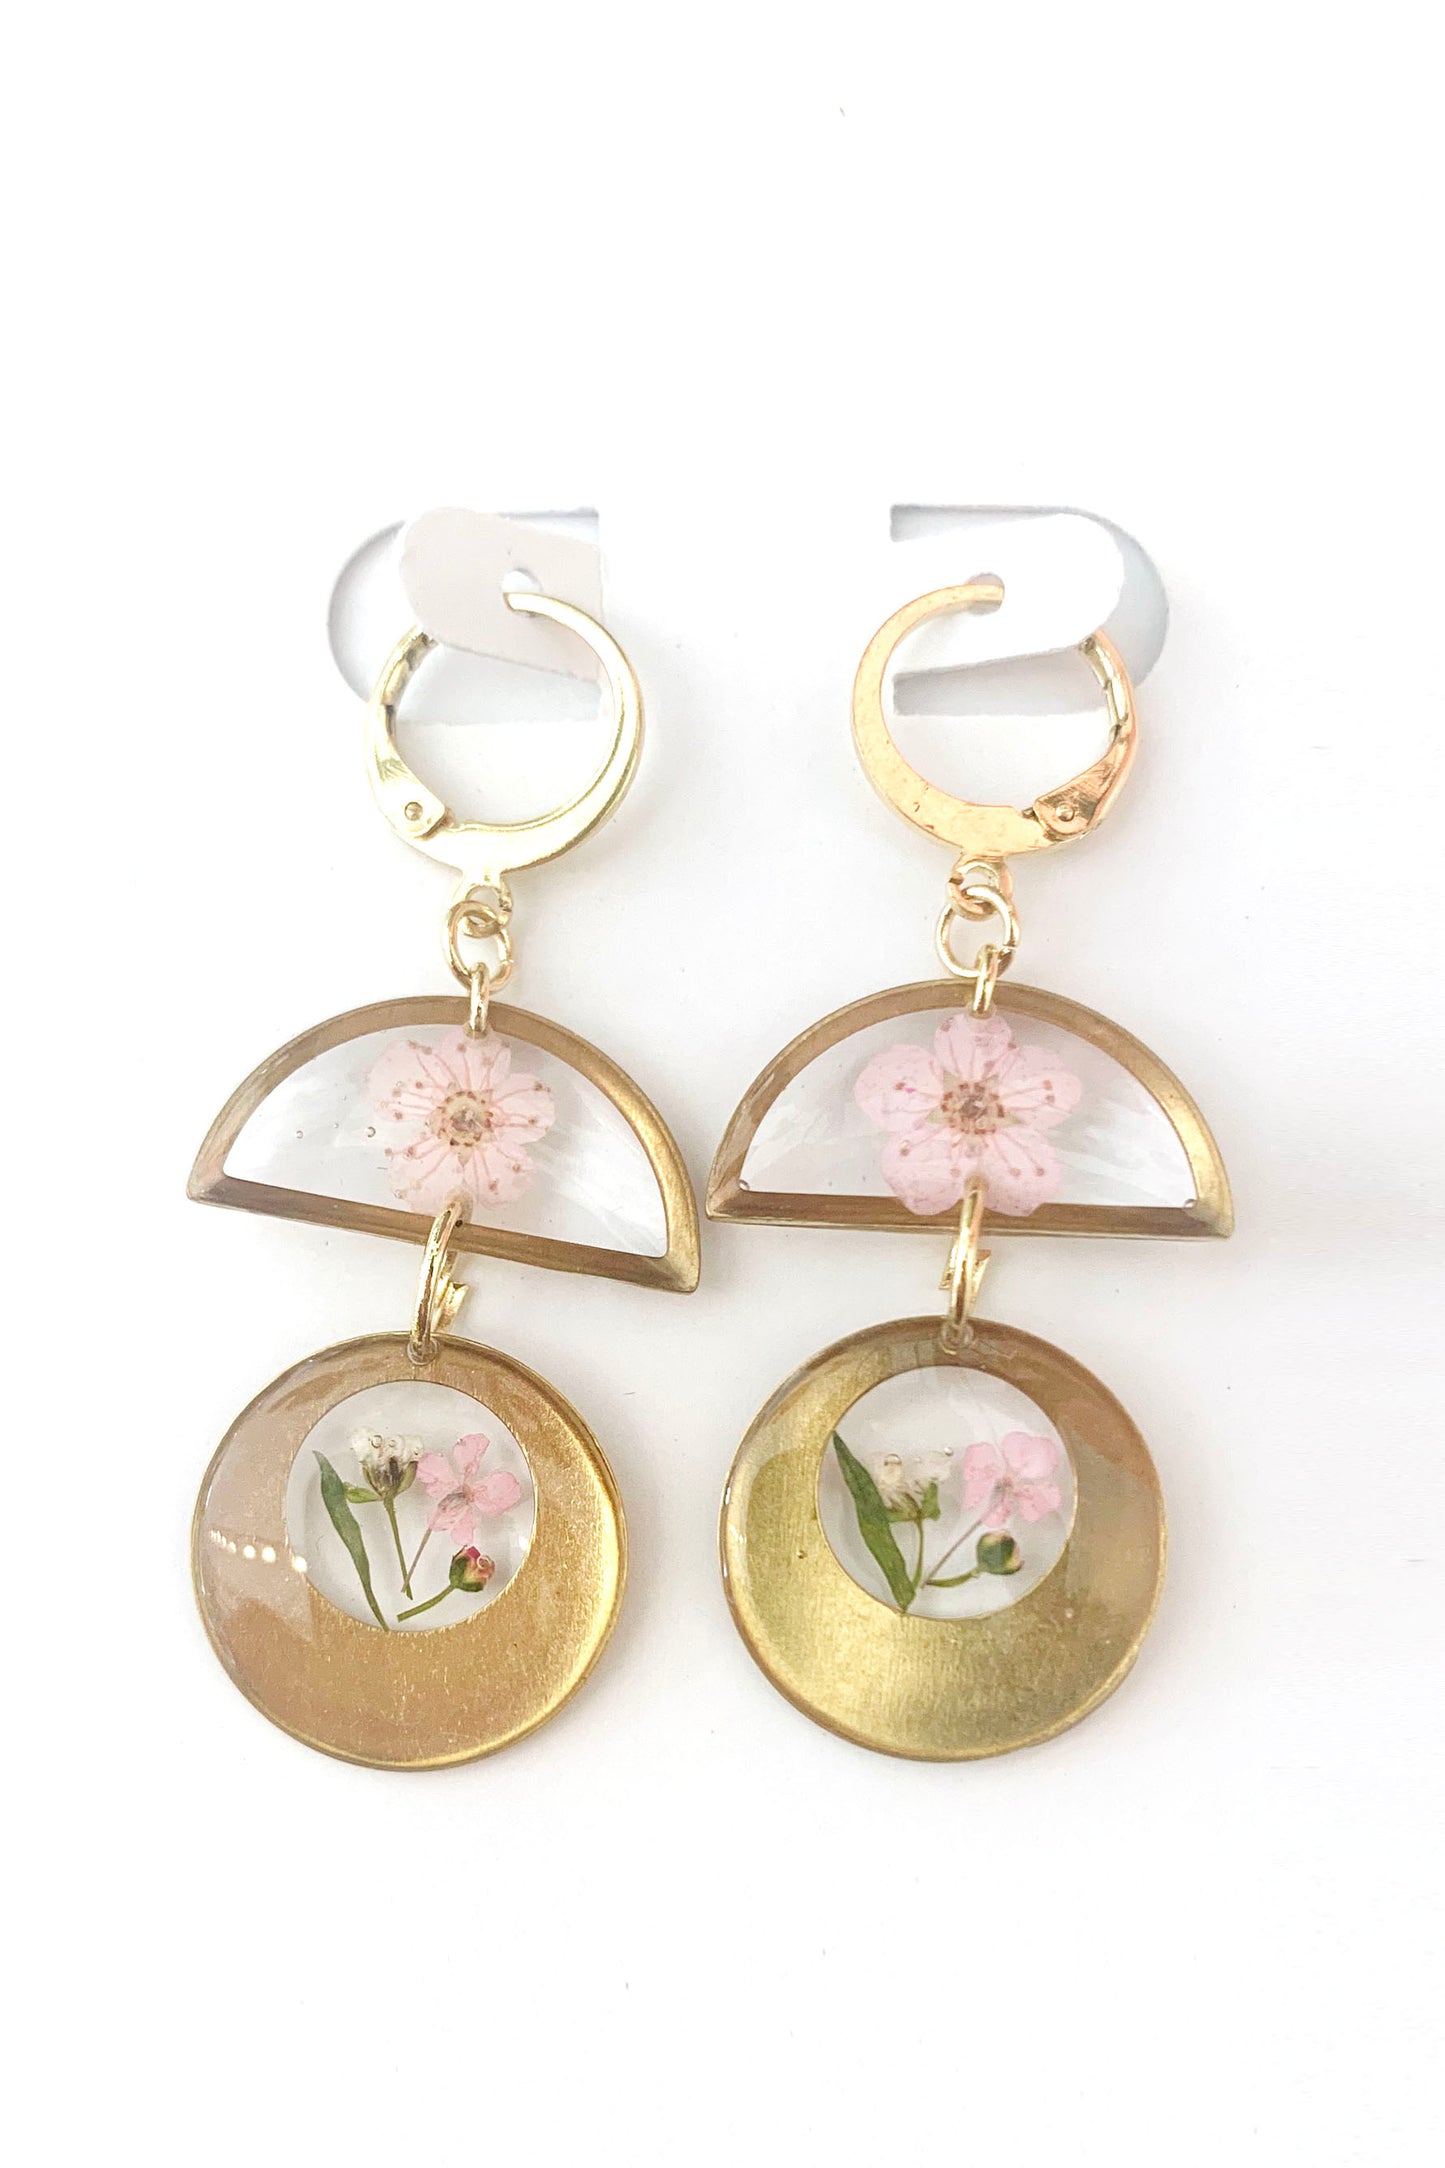 Pressed Flower Med Dangle Earrings - Assorted Shapes